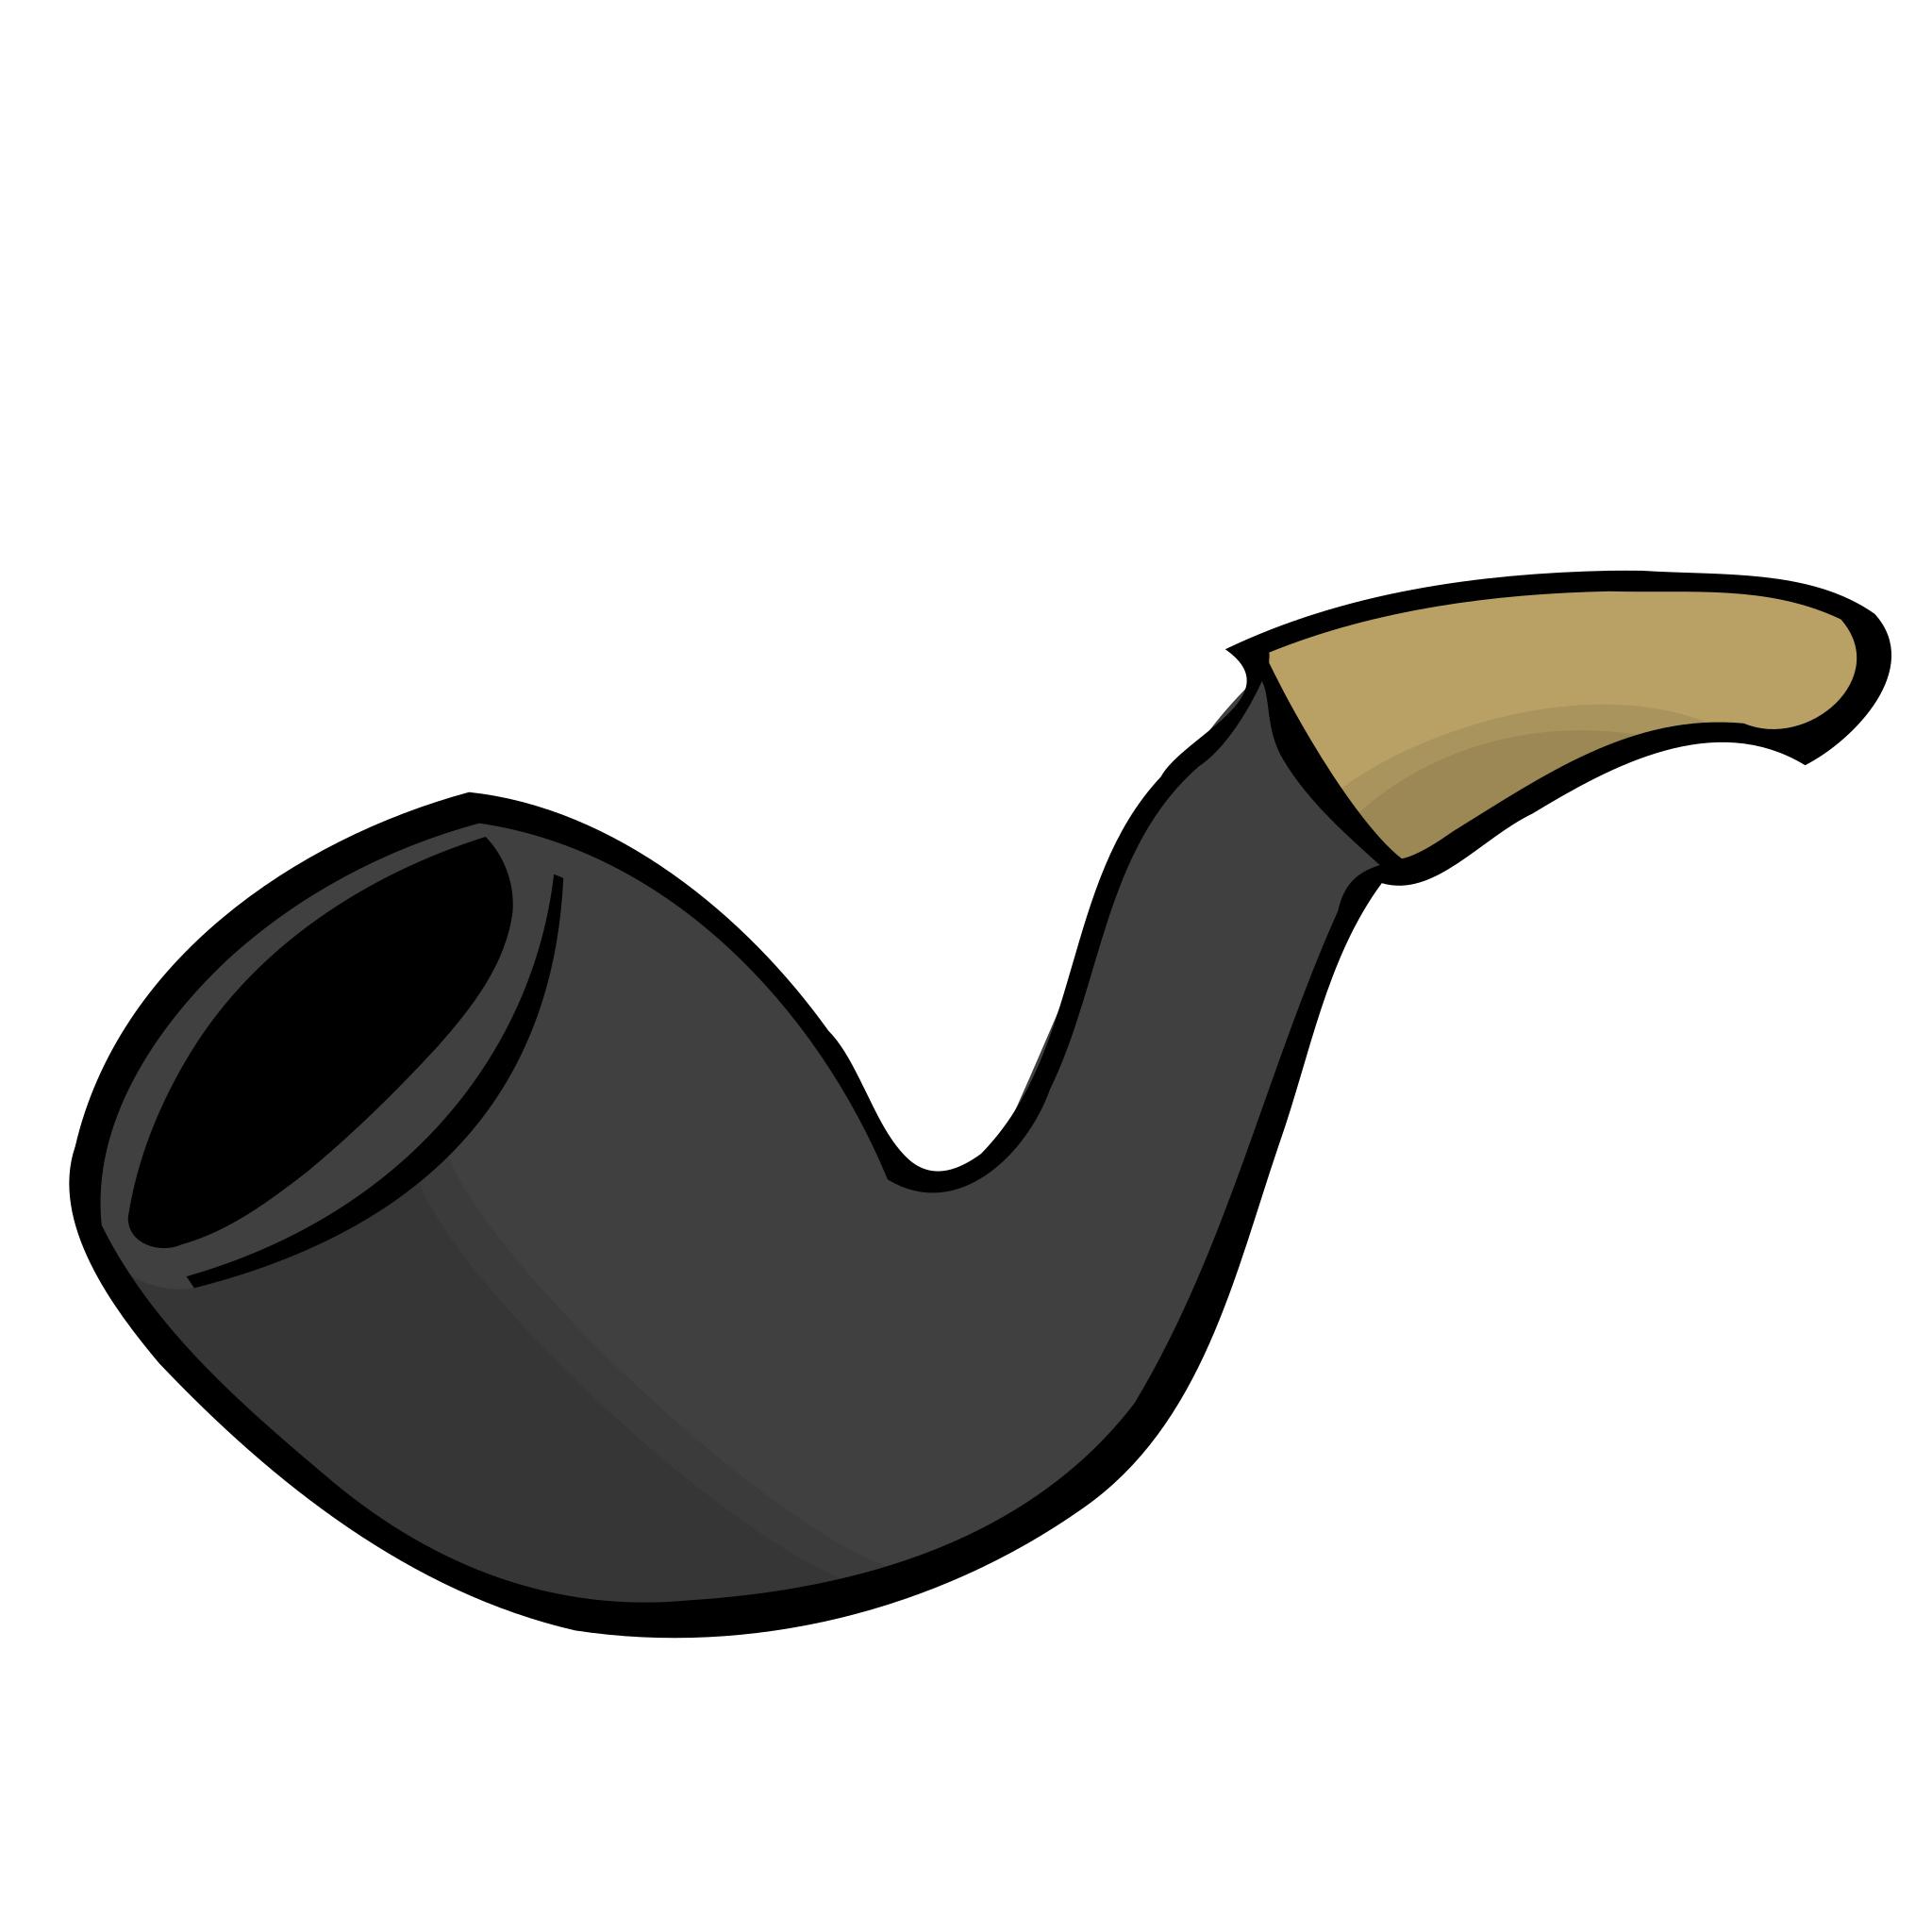 Нарисованная трубка для курения